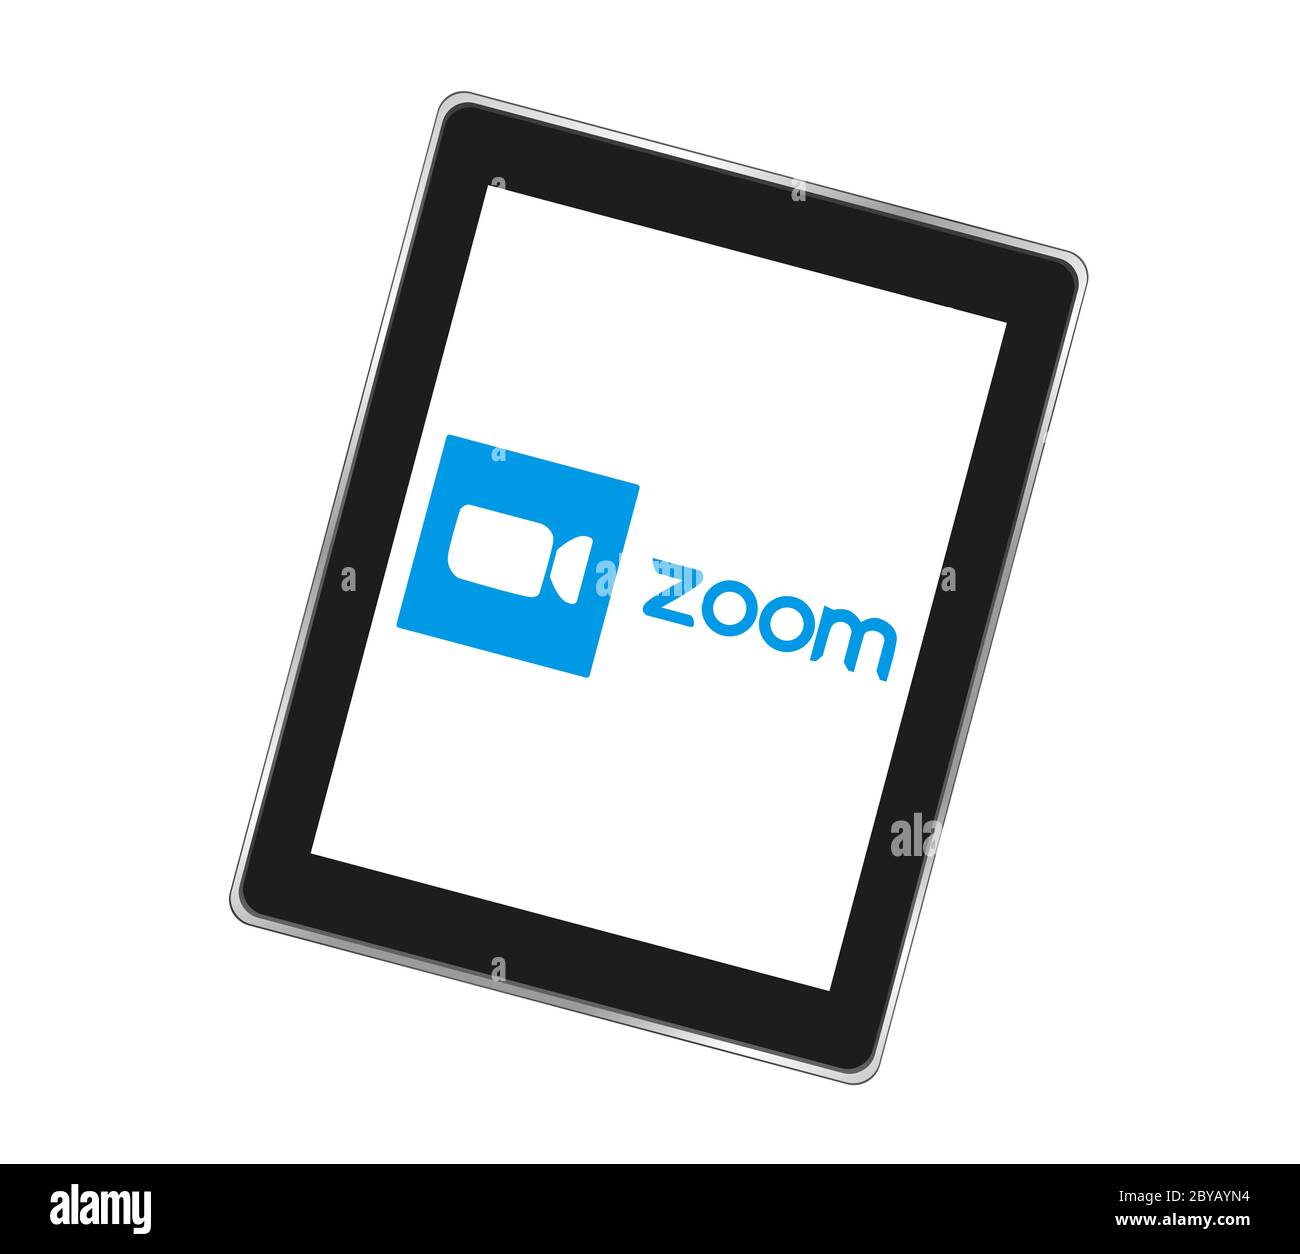 Application de visioconférence avec logo Zoom. Icône bleue de l'appareil photo. Logo de l'application Zoom. Application de diffusion multimédia en direct. Kharkiv, Ukraine - 8 juin 2020 Banque D'Images